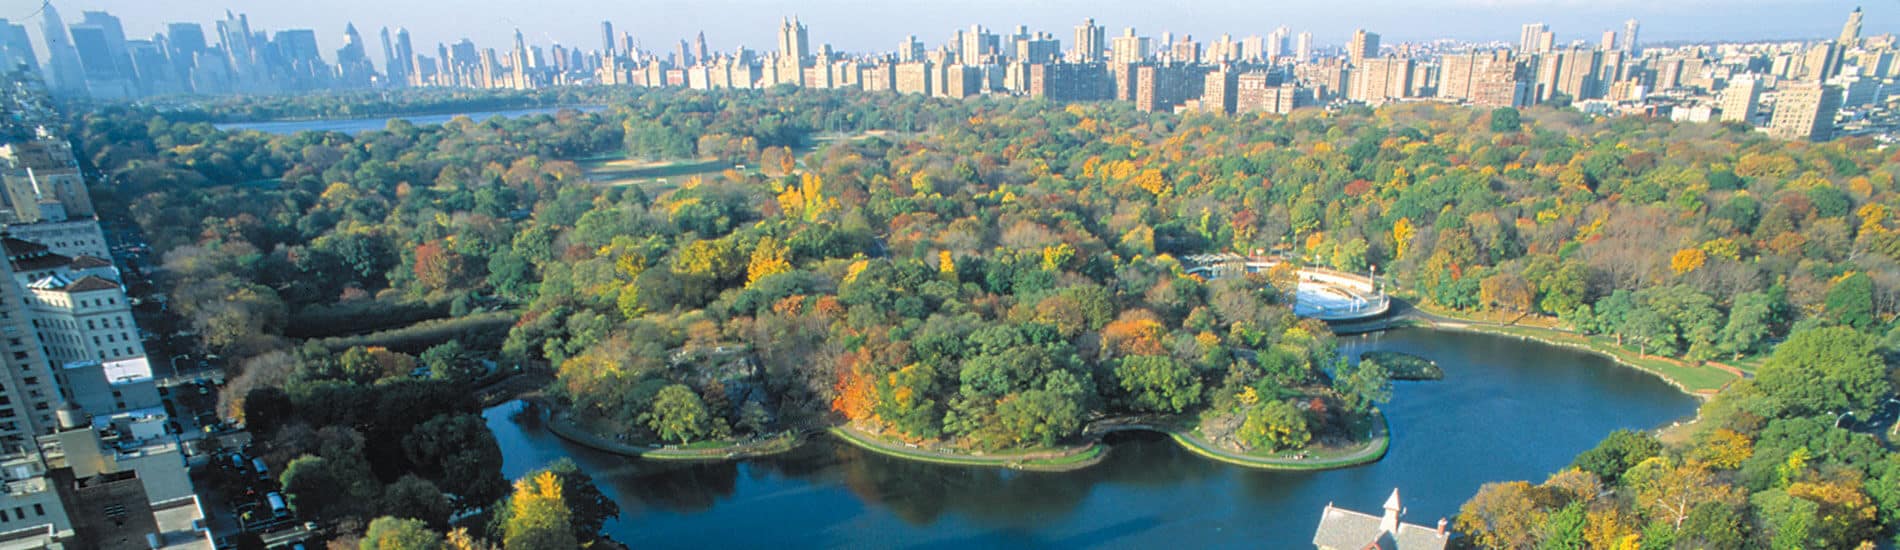 Séjour linguistique New York – Central Park